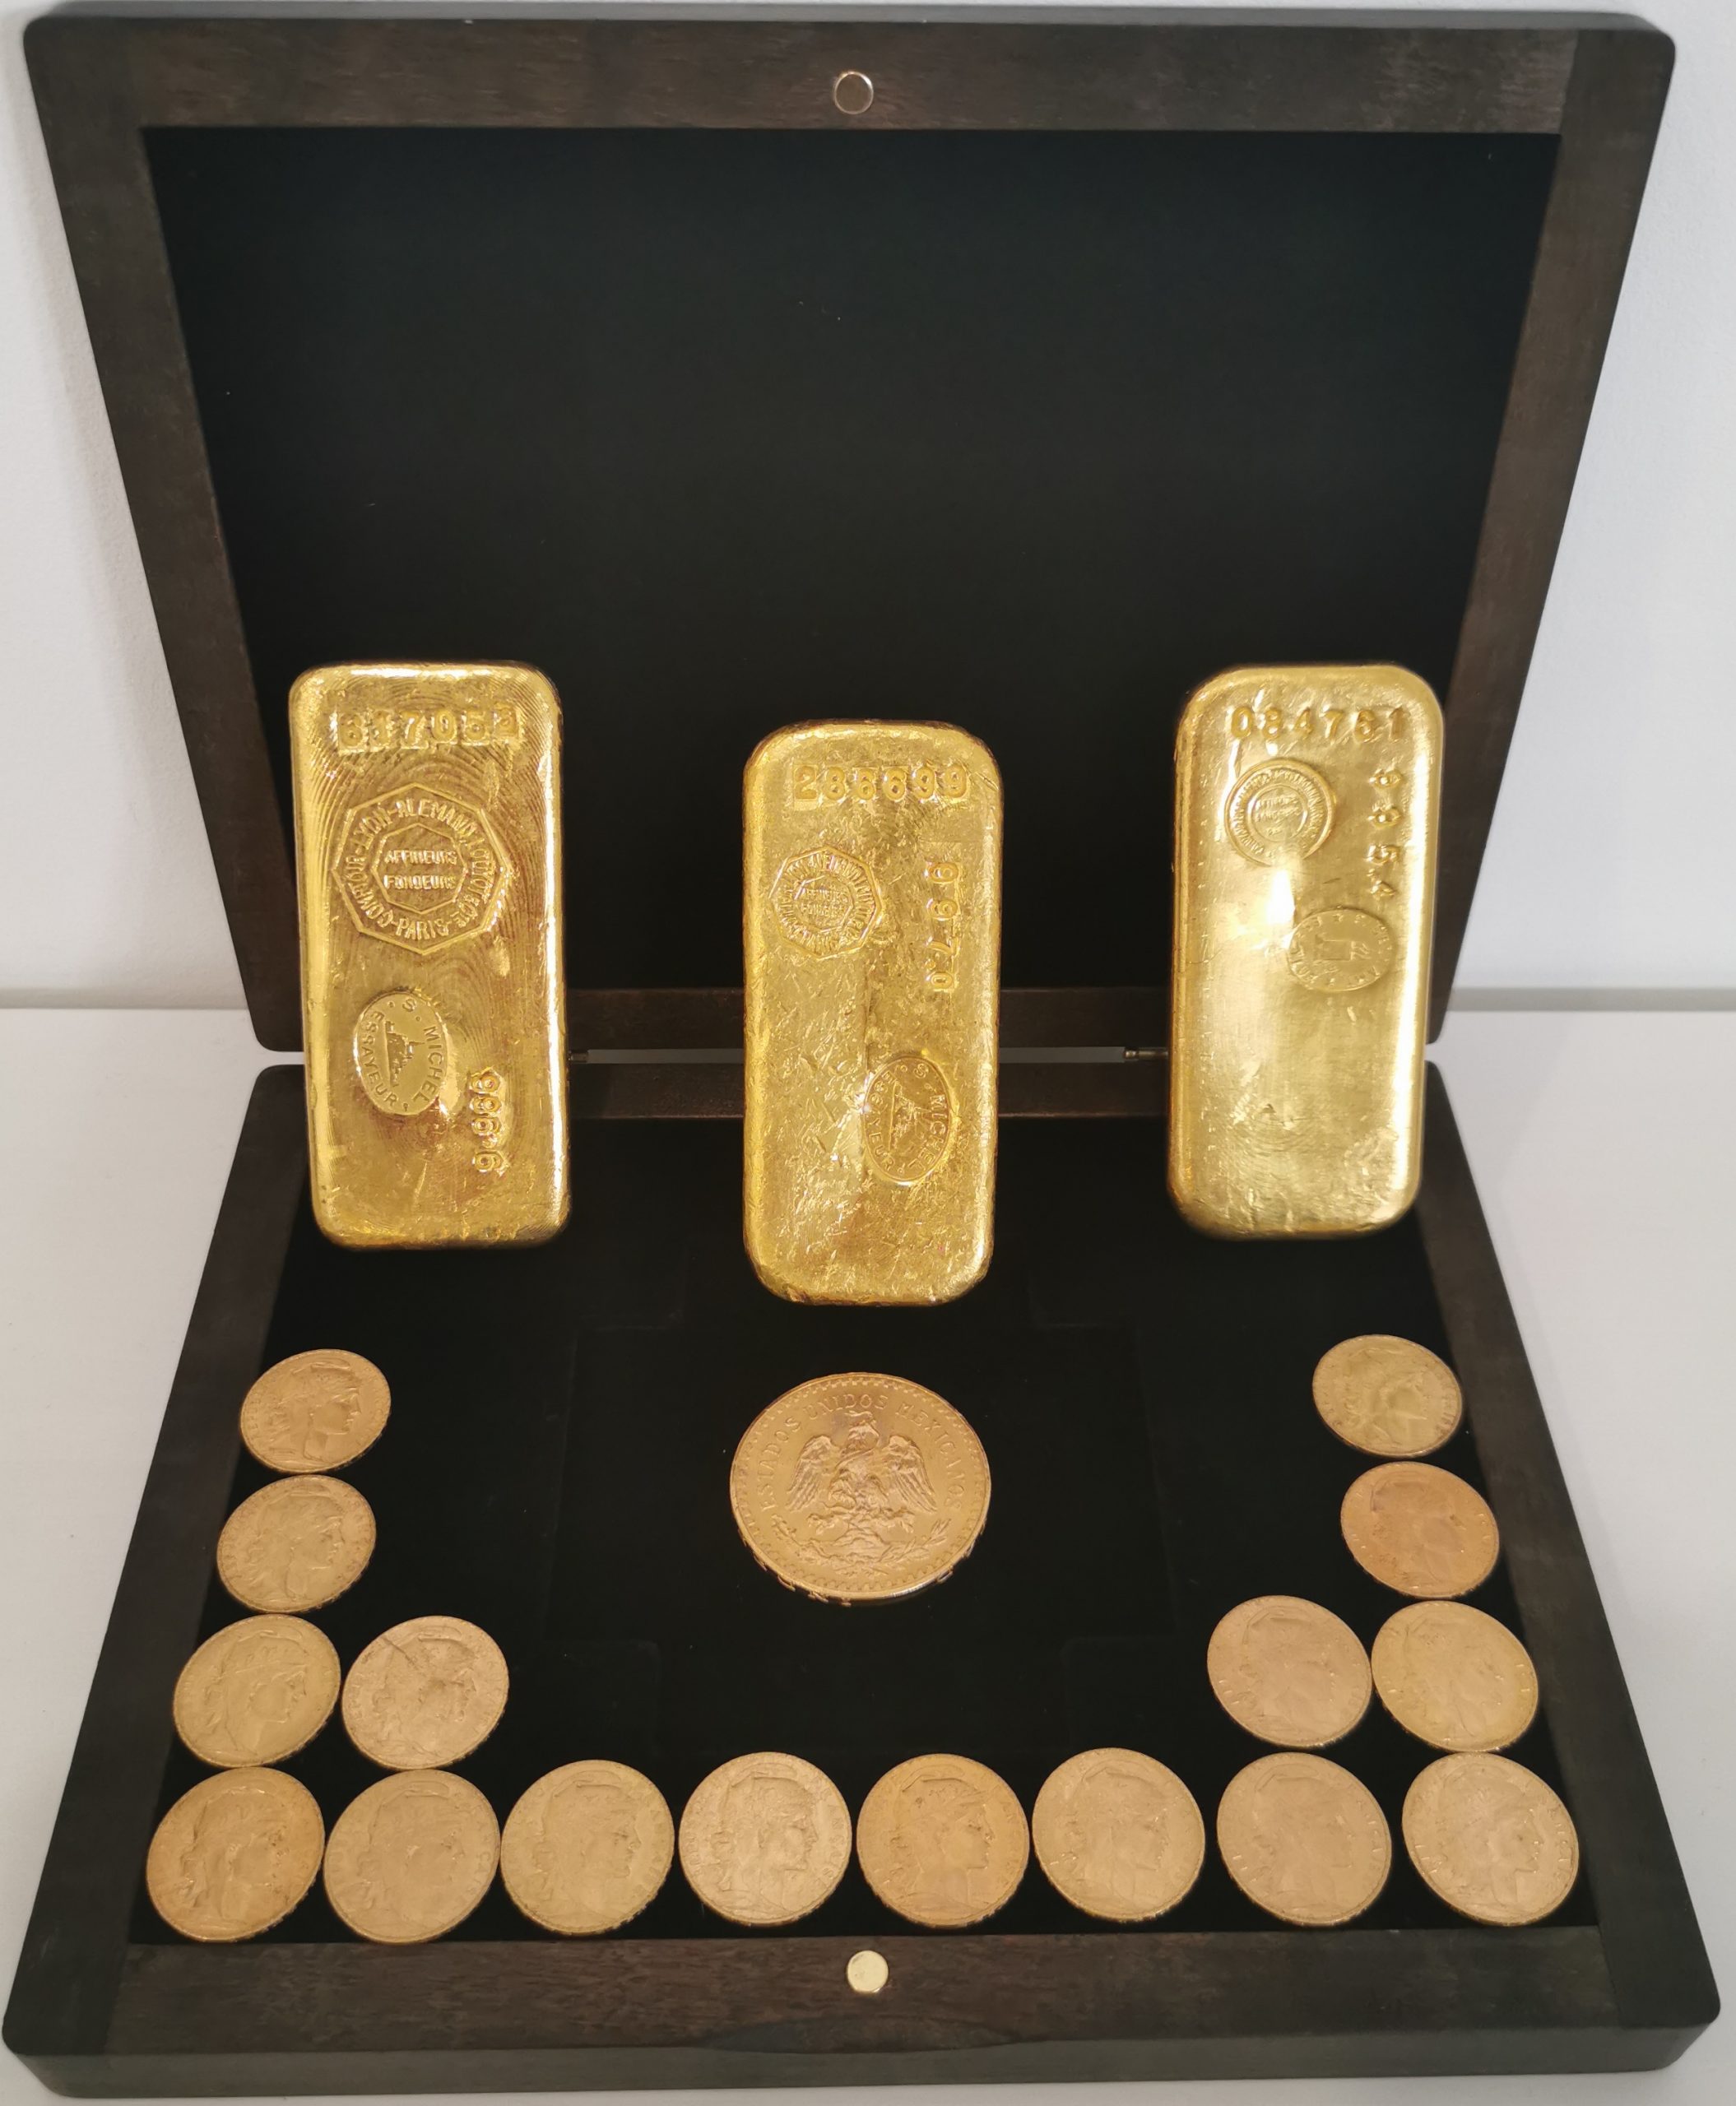 Pièces d'or ou lingot d'or : que choisir pour investir ?